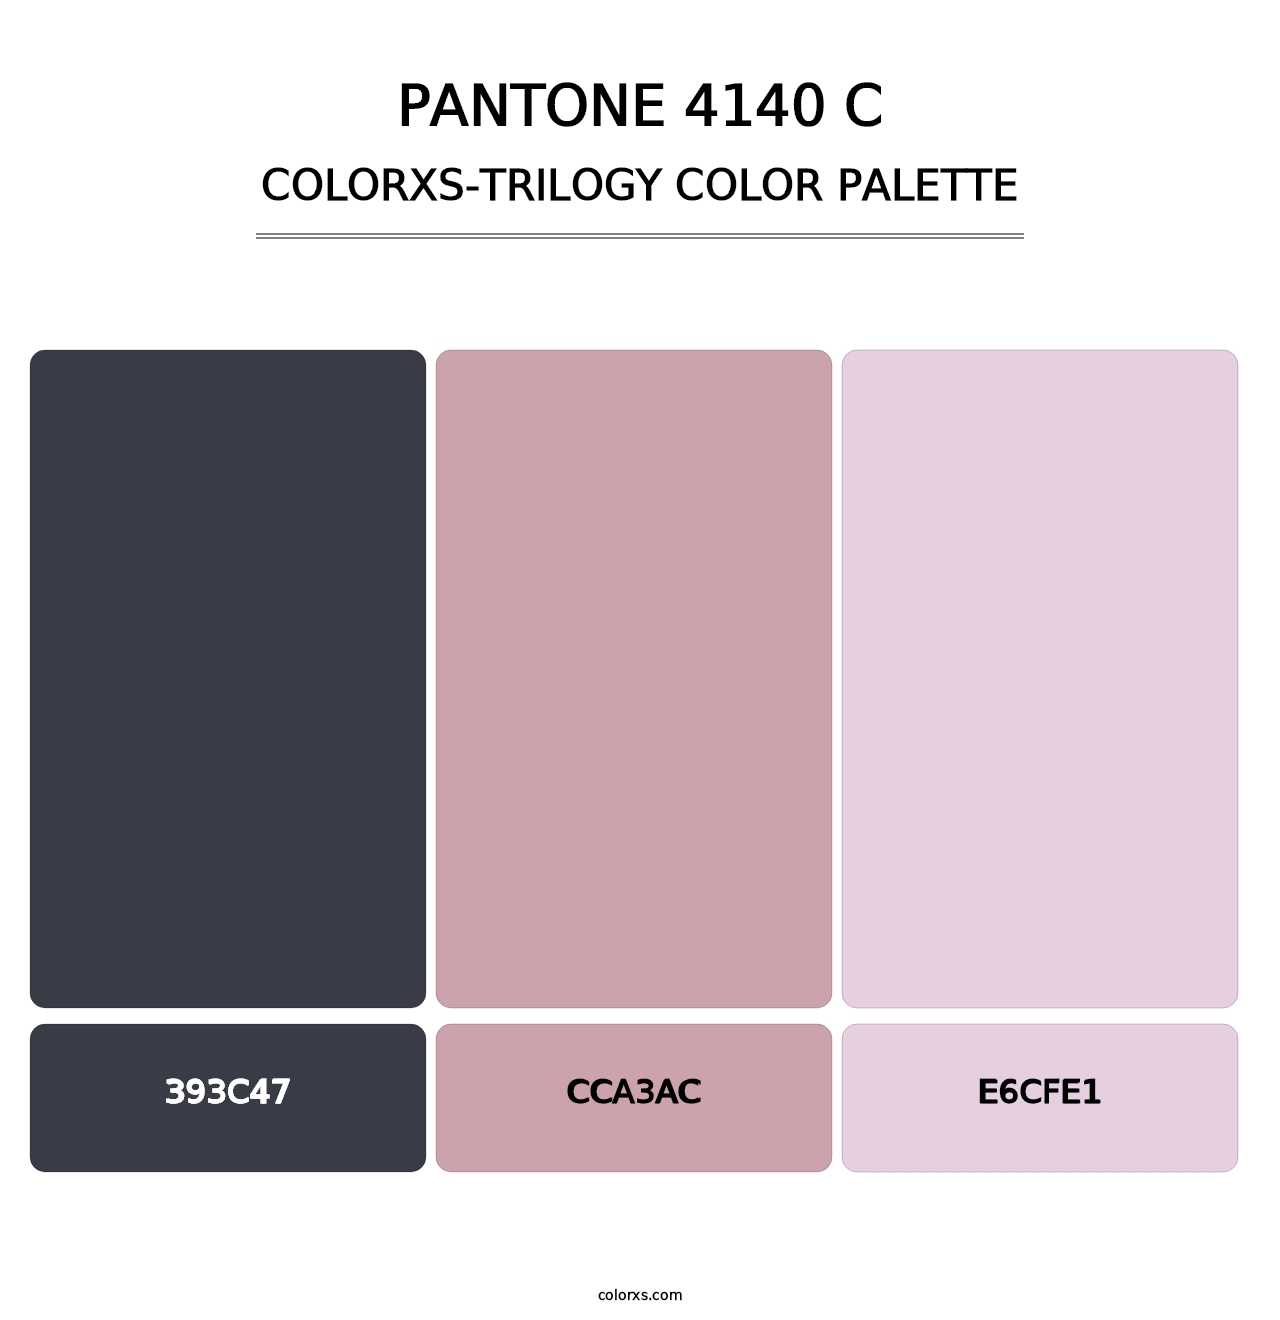 PANTONE 4140 C - Colorxs Trilogy Palette